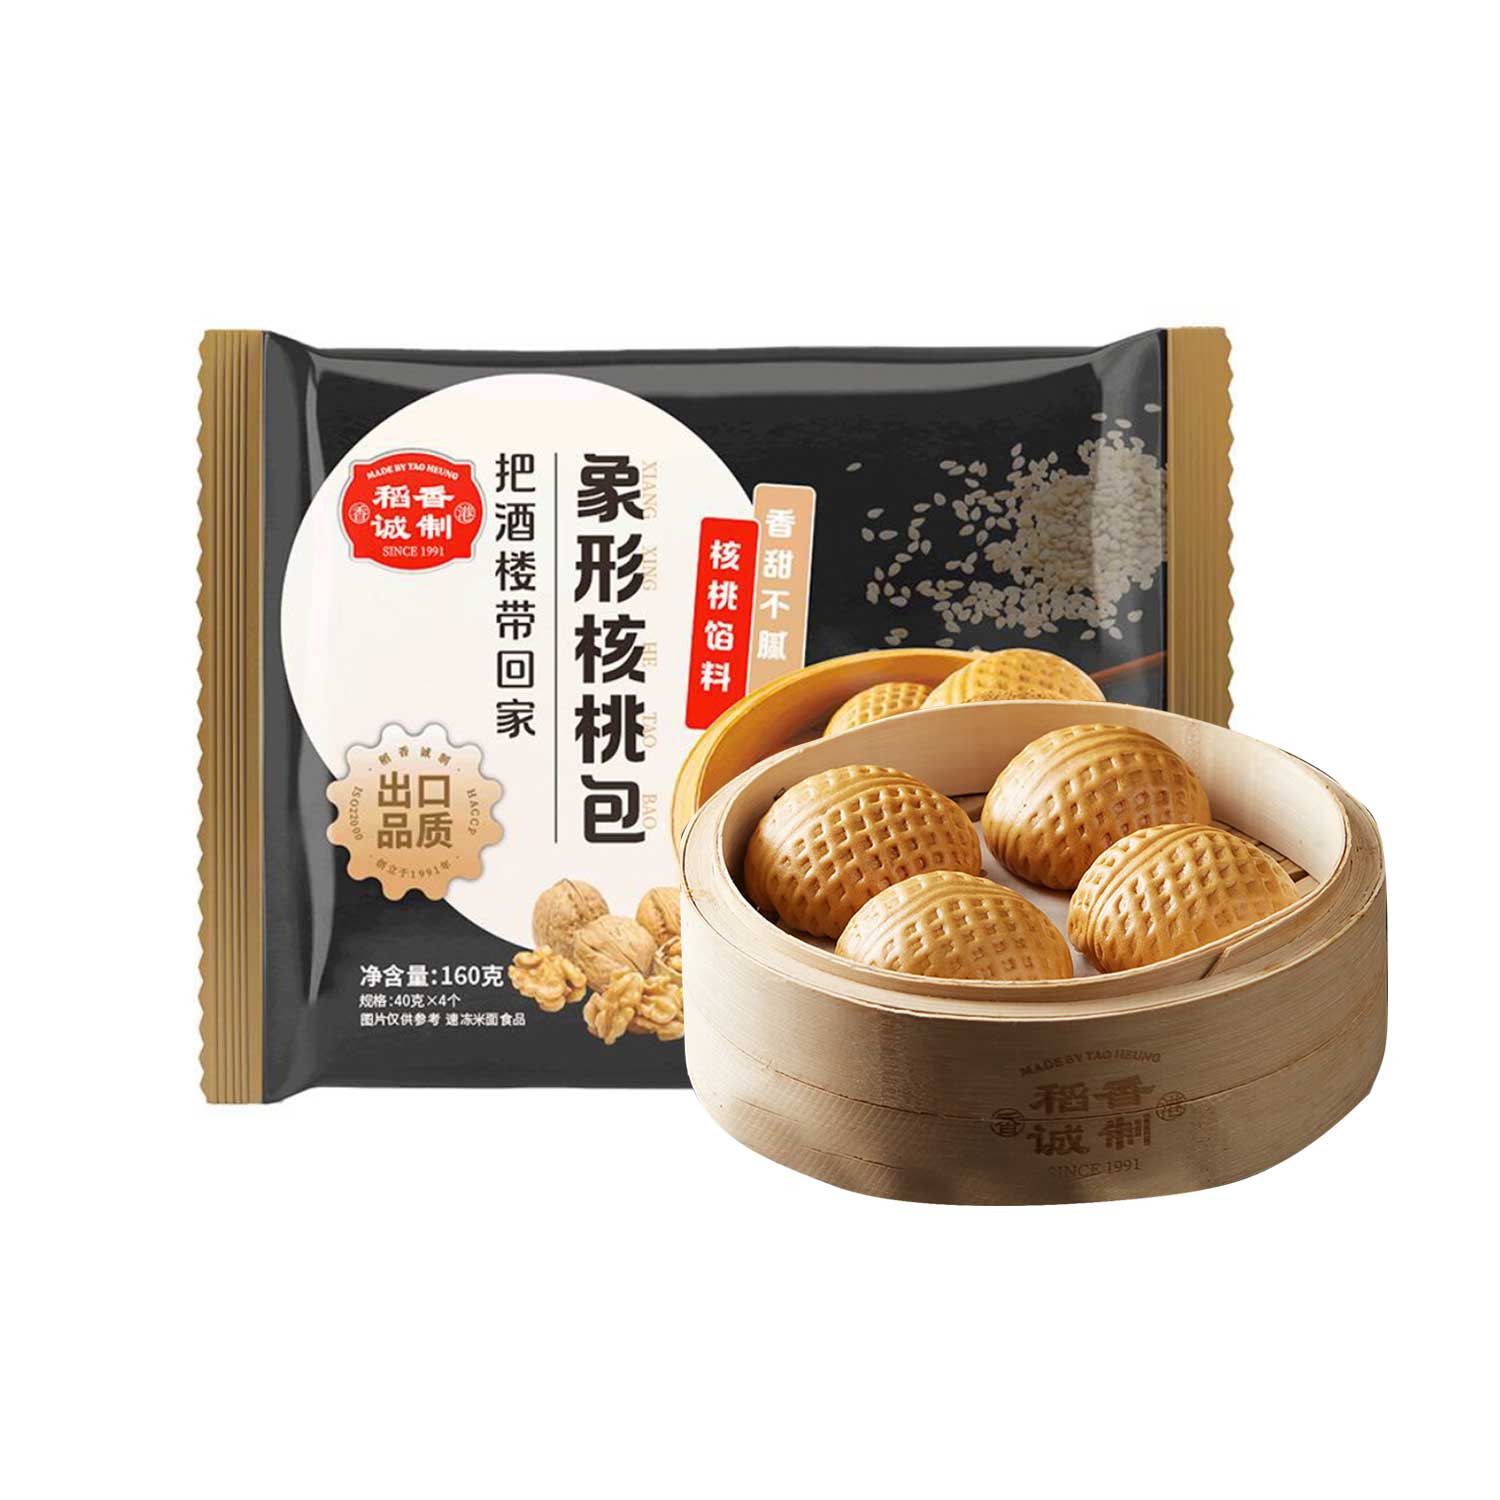 Tao Heung Walnut Bun 160g-eBest-Buns & Pancakes,Frozen food